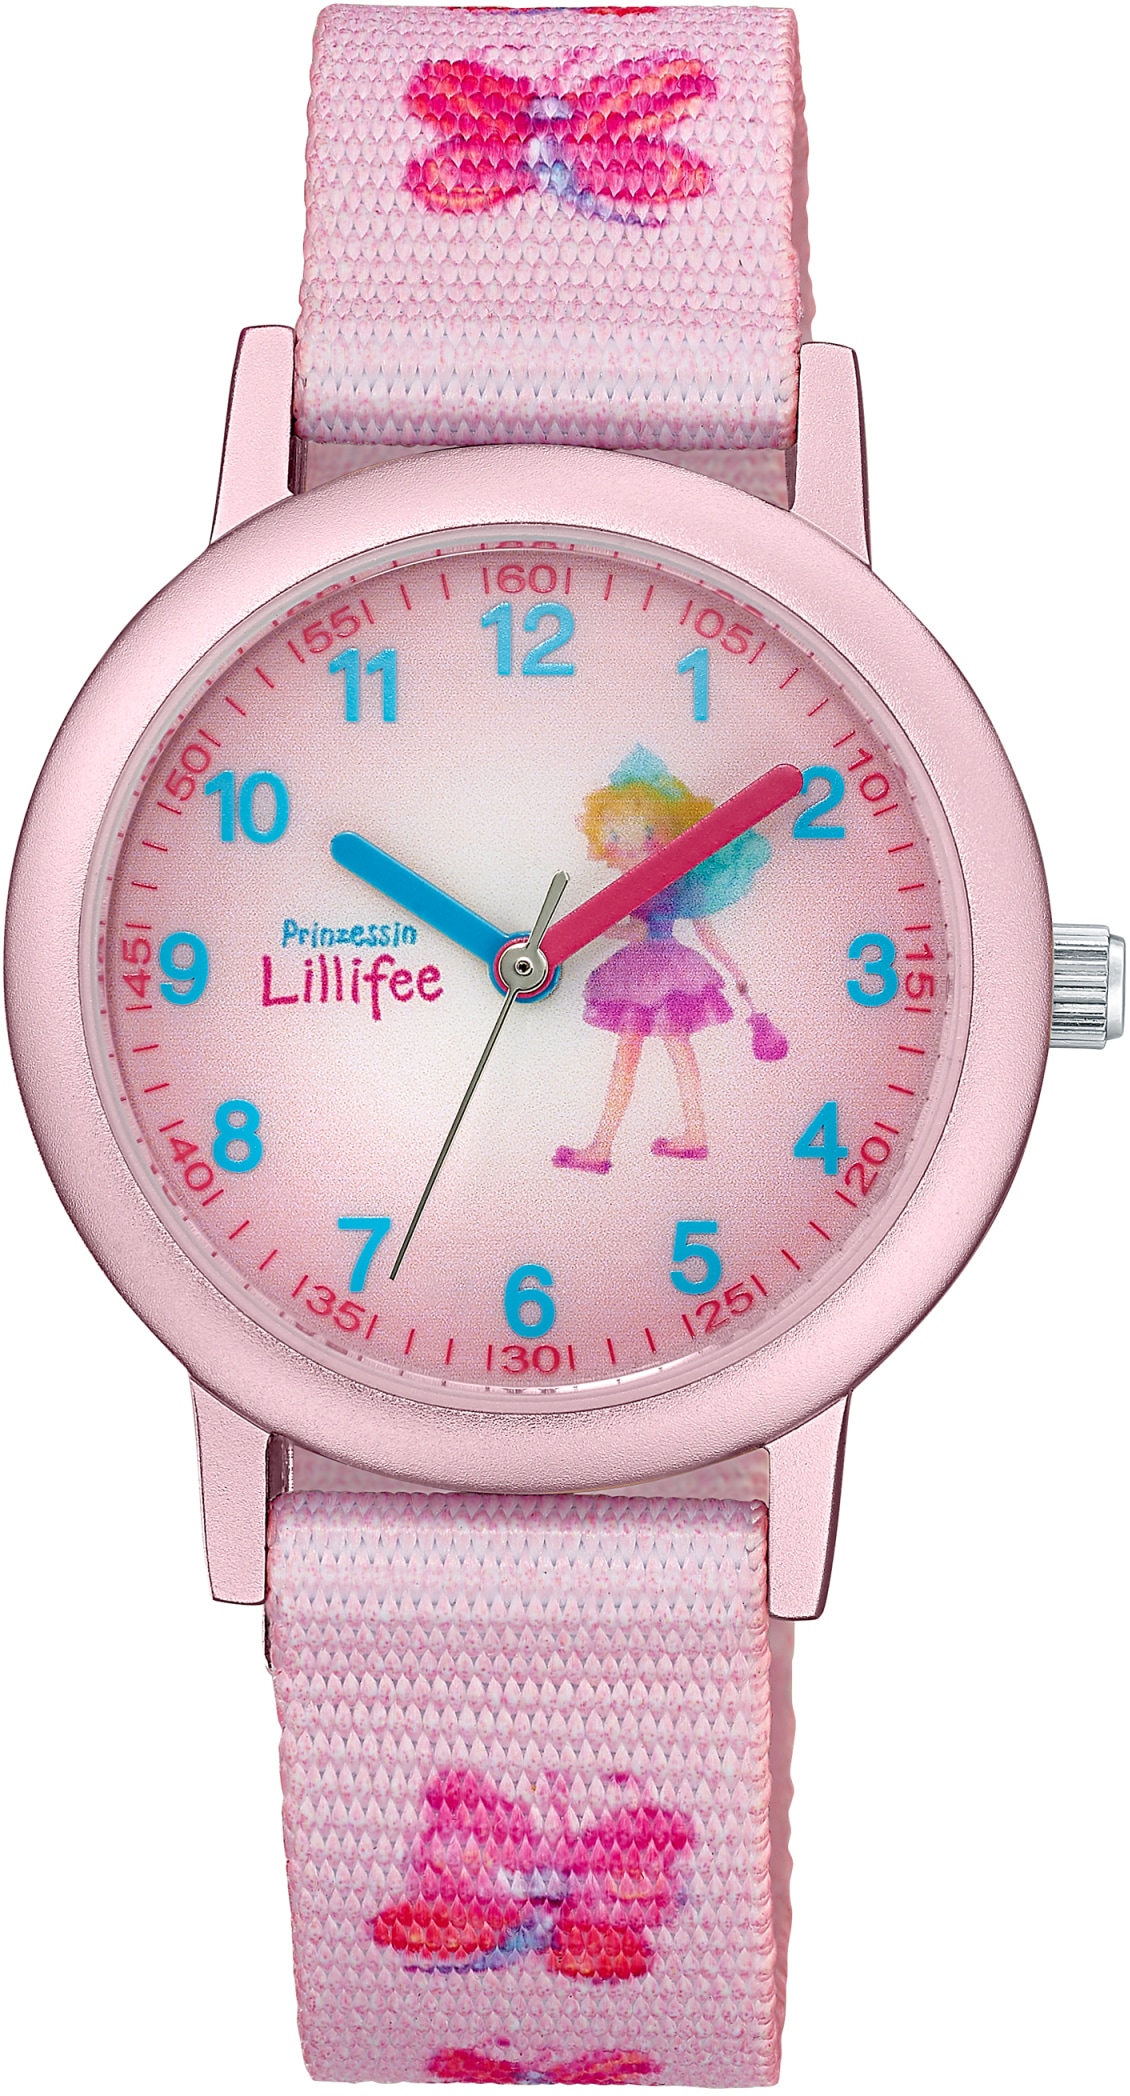 Prinzessin Lillifee Quarzuhr »2031756«, Armbanduhr, Kinderuhr, Mädchenuhr, ideal auch als Geschenk